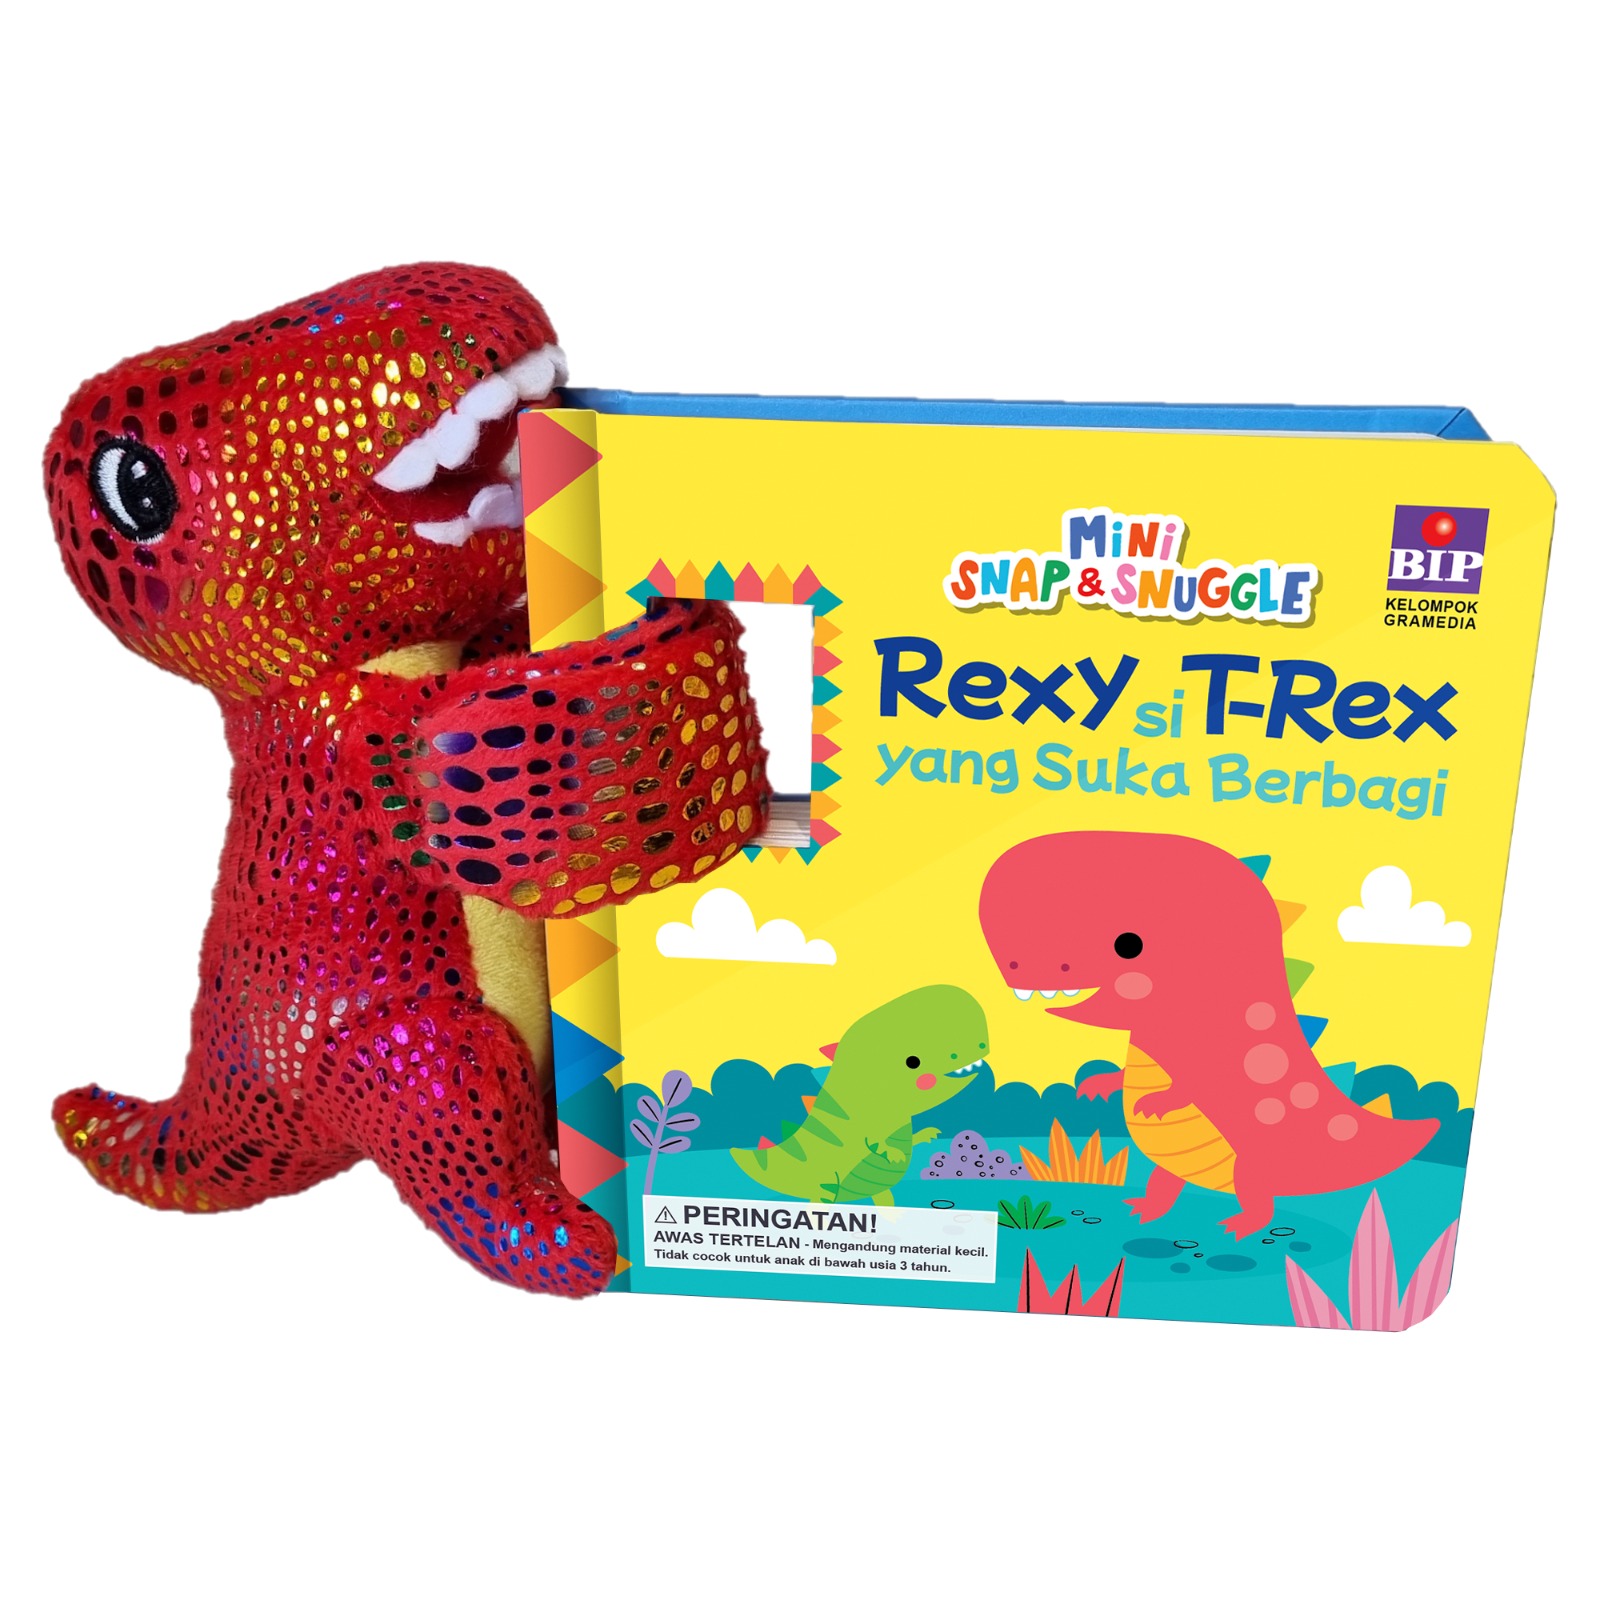 Mini Snap & Snuggle: Rexy si T-Rex yang Suka Berbagi